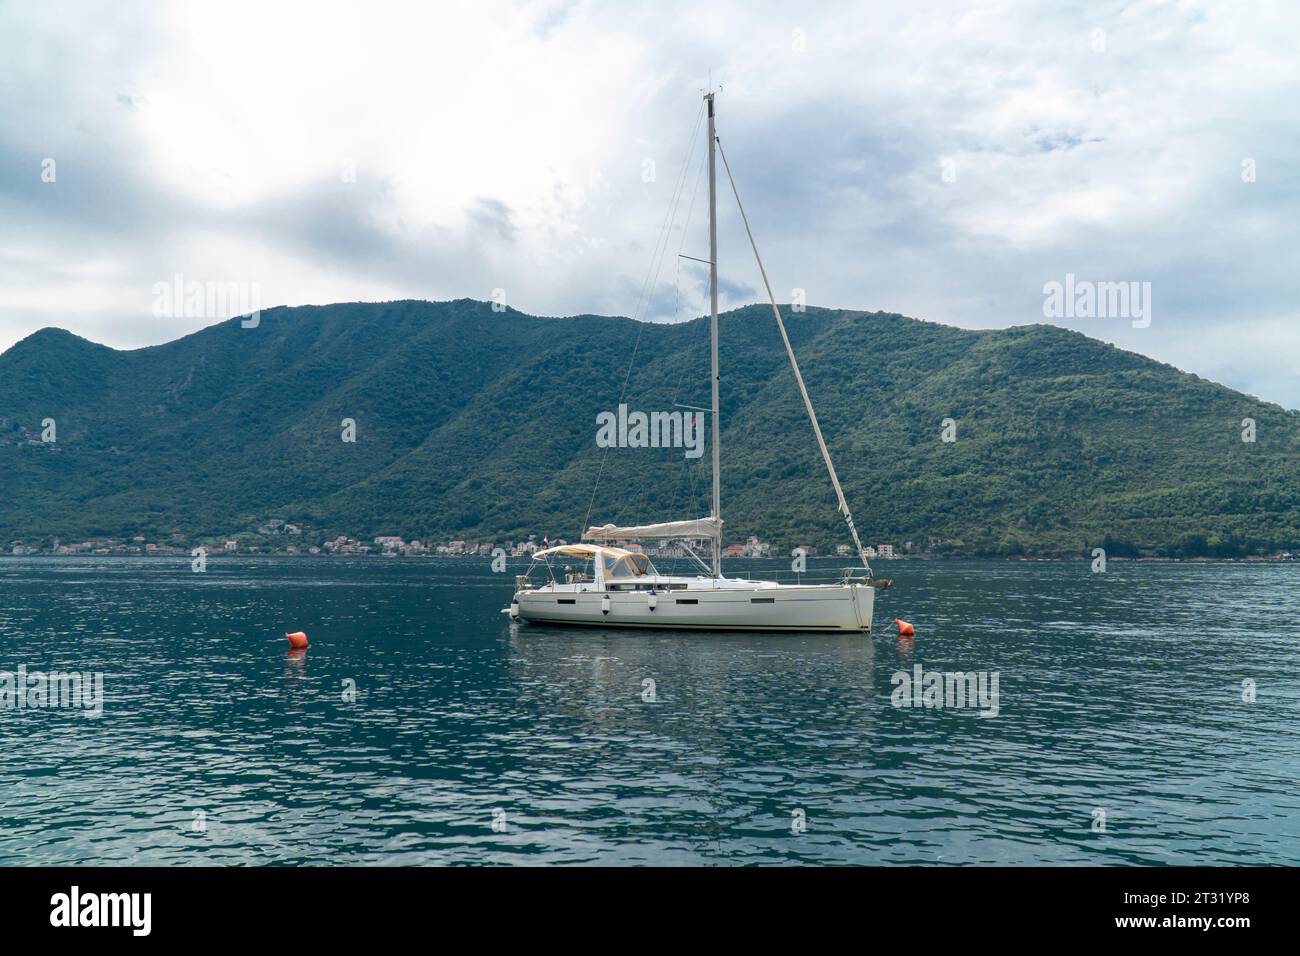 Barca a vela in mare. Yacht bianco con vele abbassate in un mare calmo Foto Stock